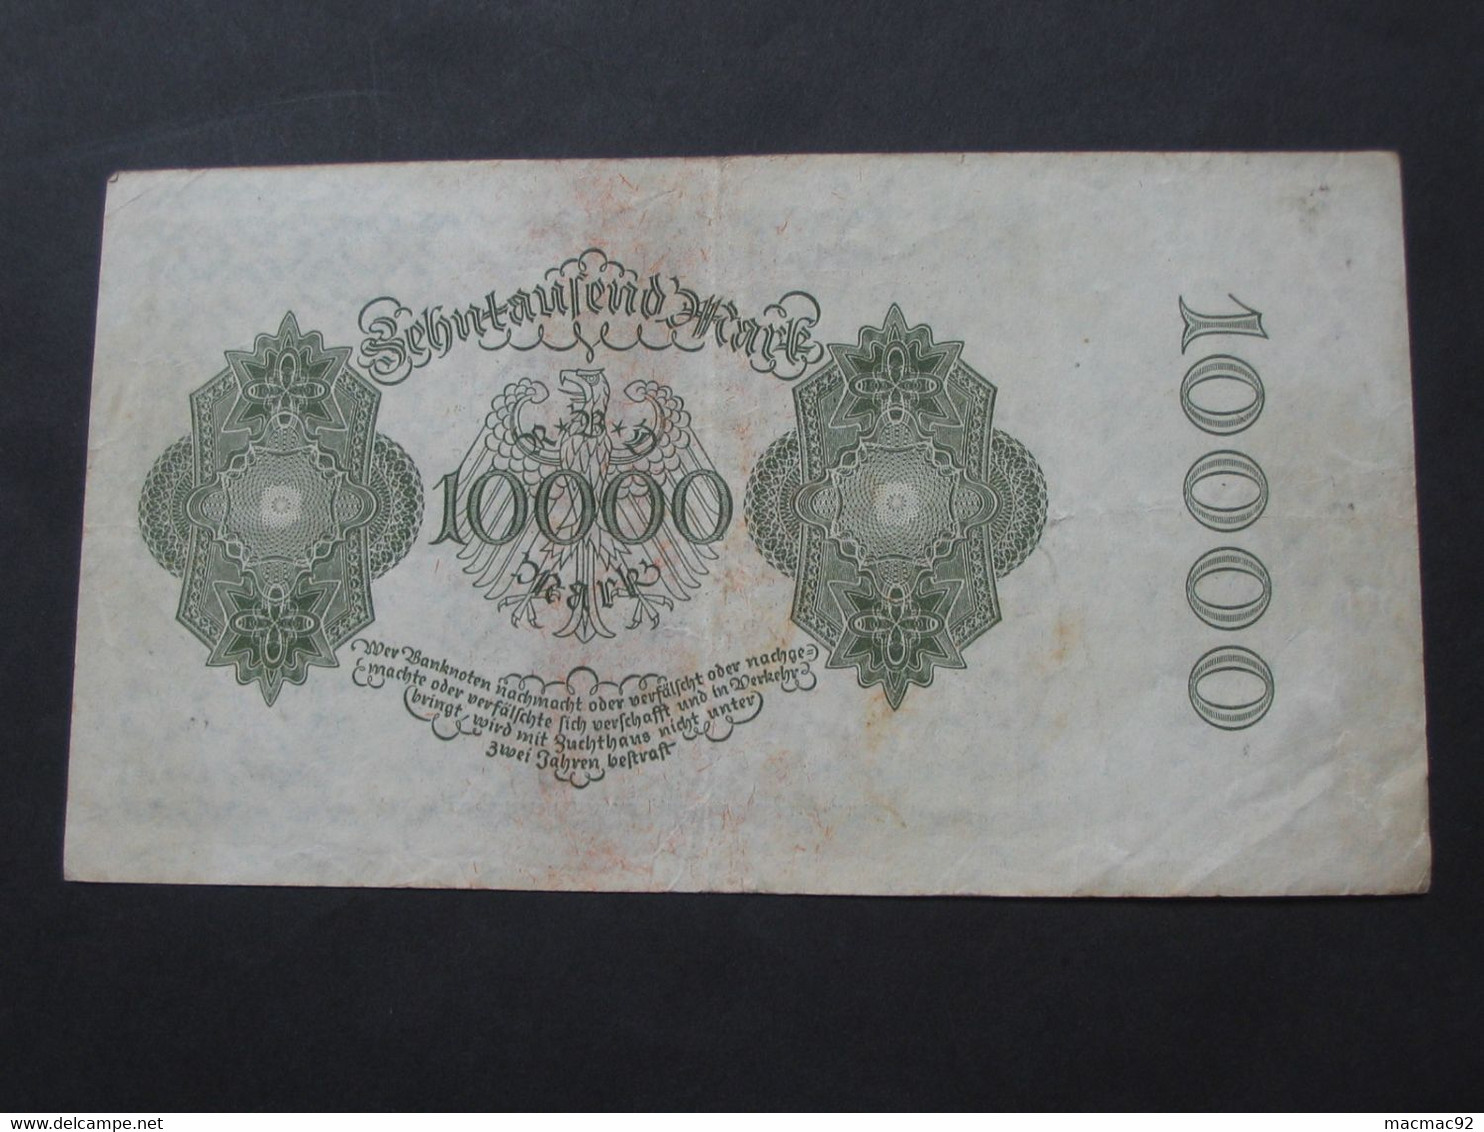 5000 Funftausend  Mark - Berlin 1922  Reichsbanknote - Germany **** EN ACHAT IMMEDIAT **** - 10000 Mark